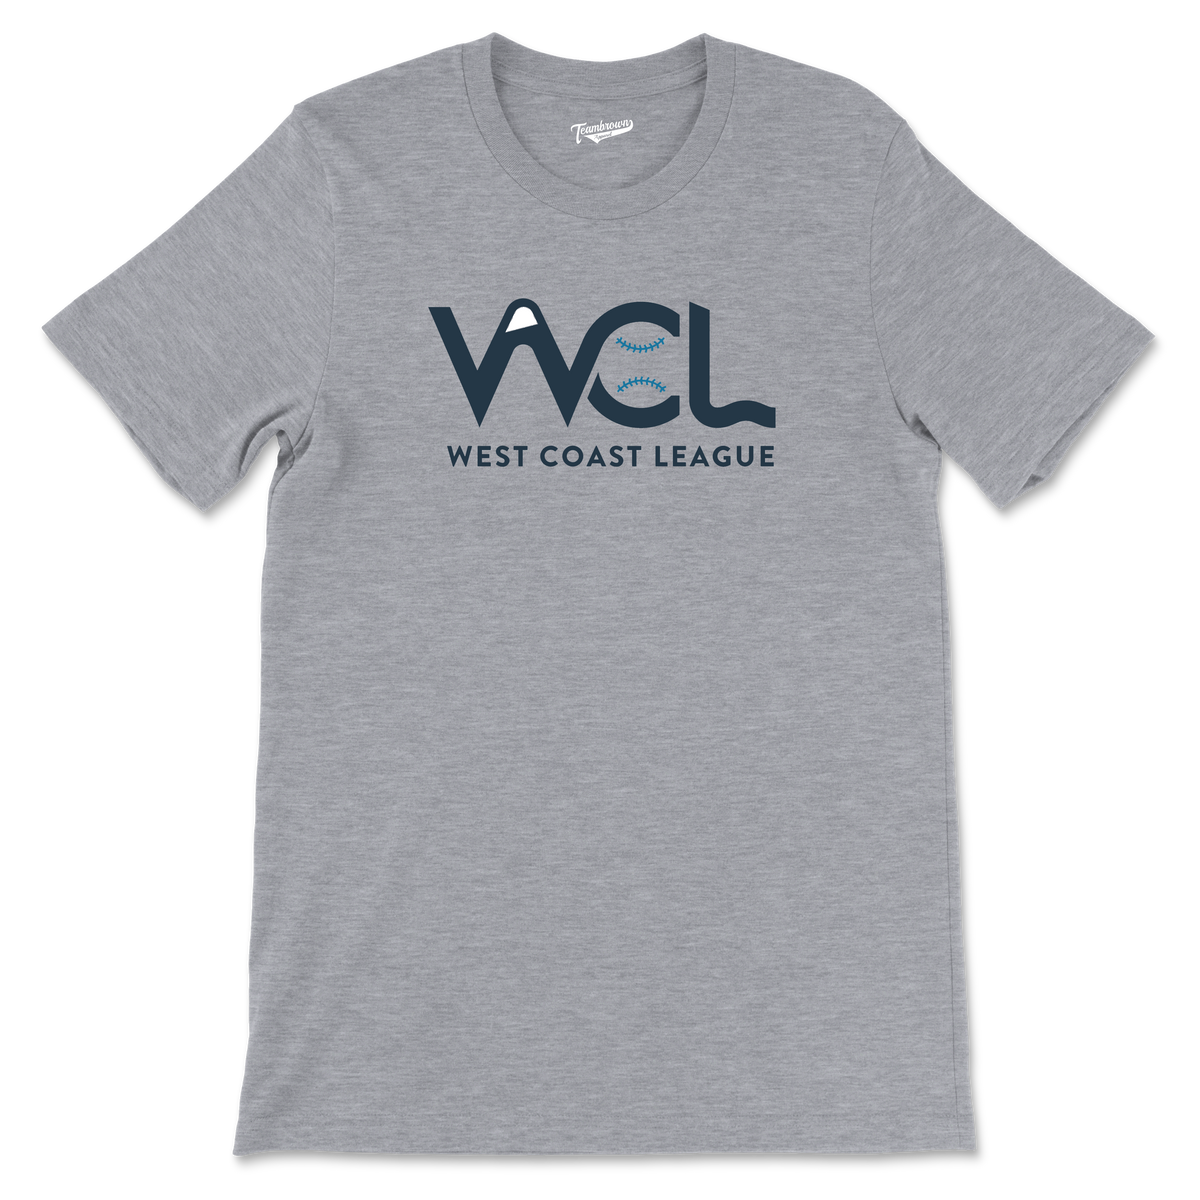 WCL - West Coast League - Unisex T-Shirt | Officially Licensed - West Coast League